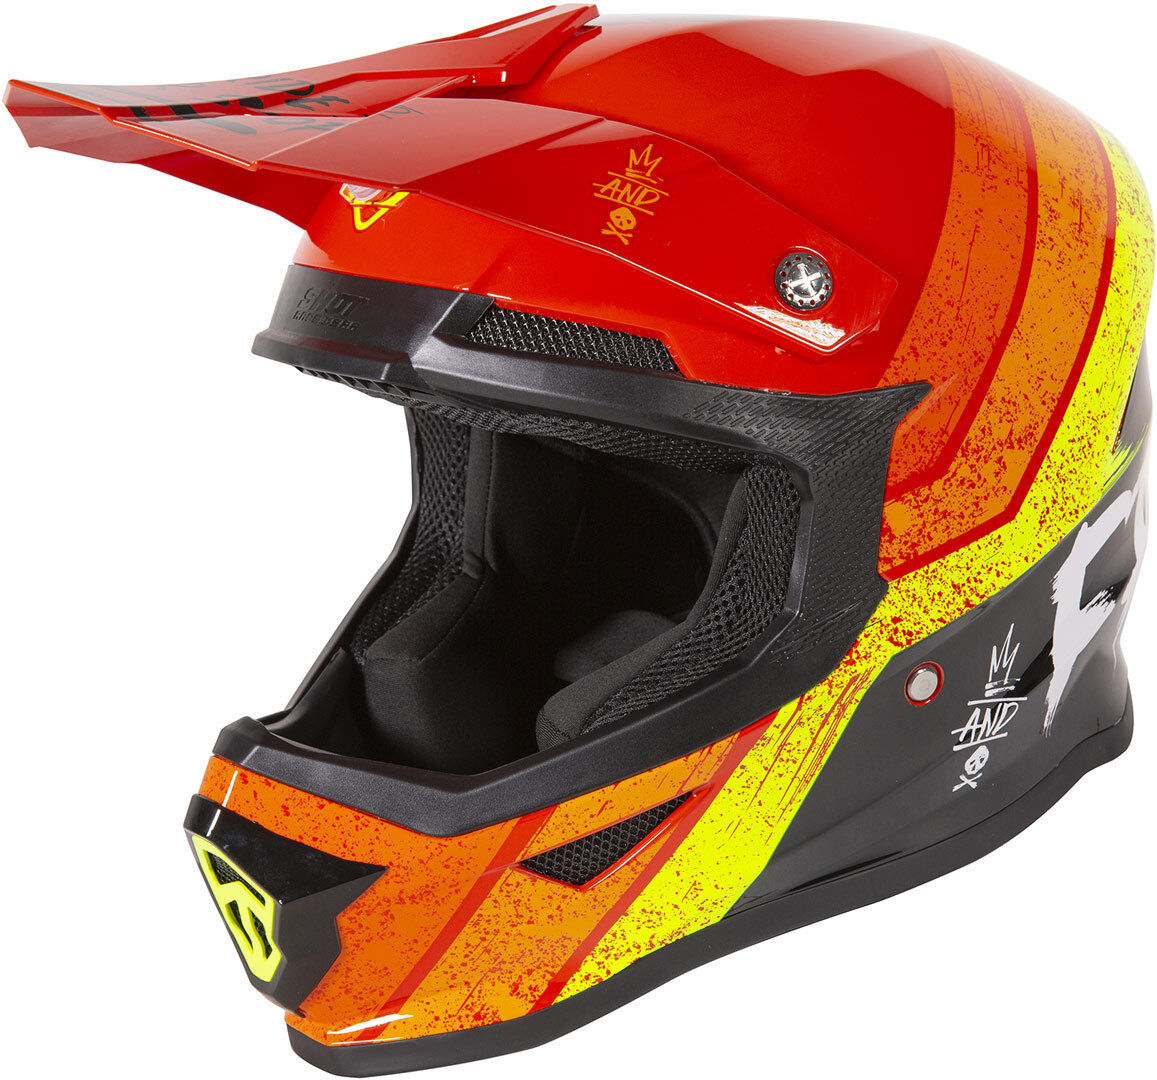 Freegun XP4 Stripes Casco de Motocross - Rojo